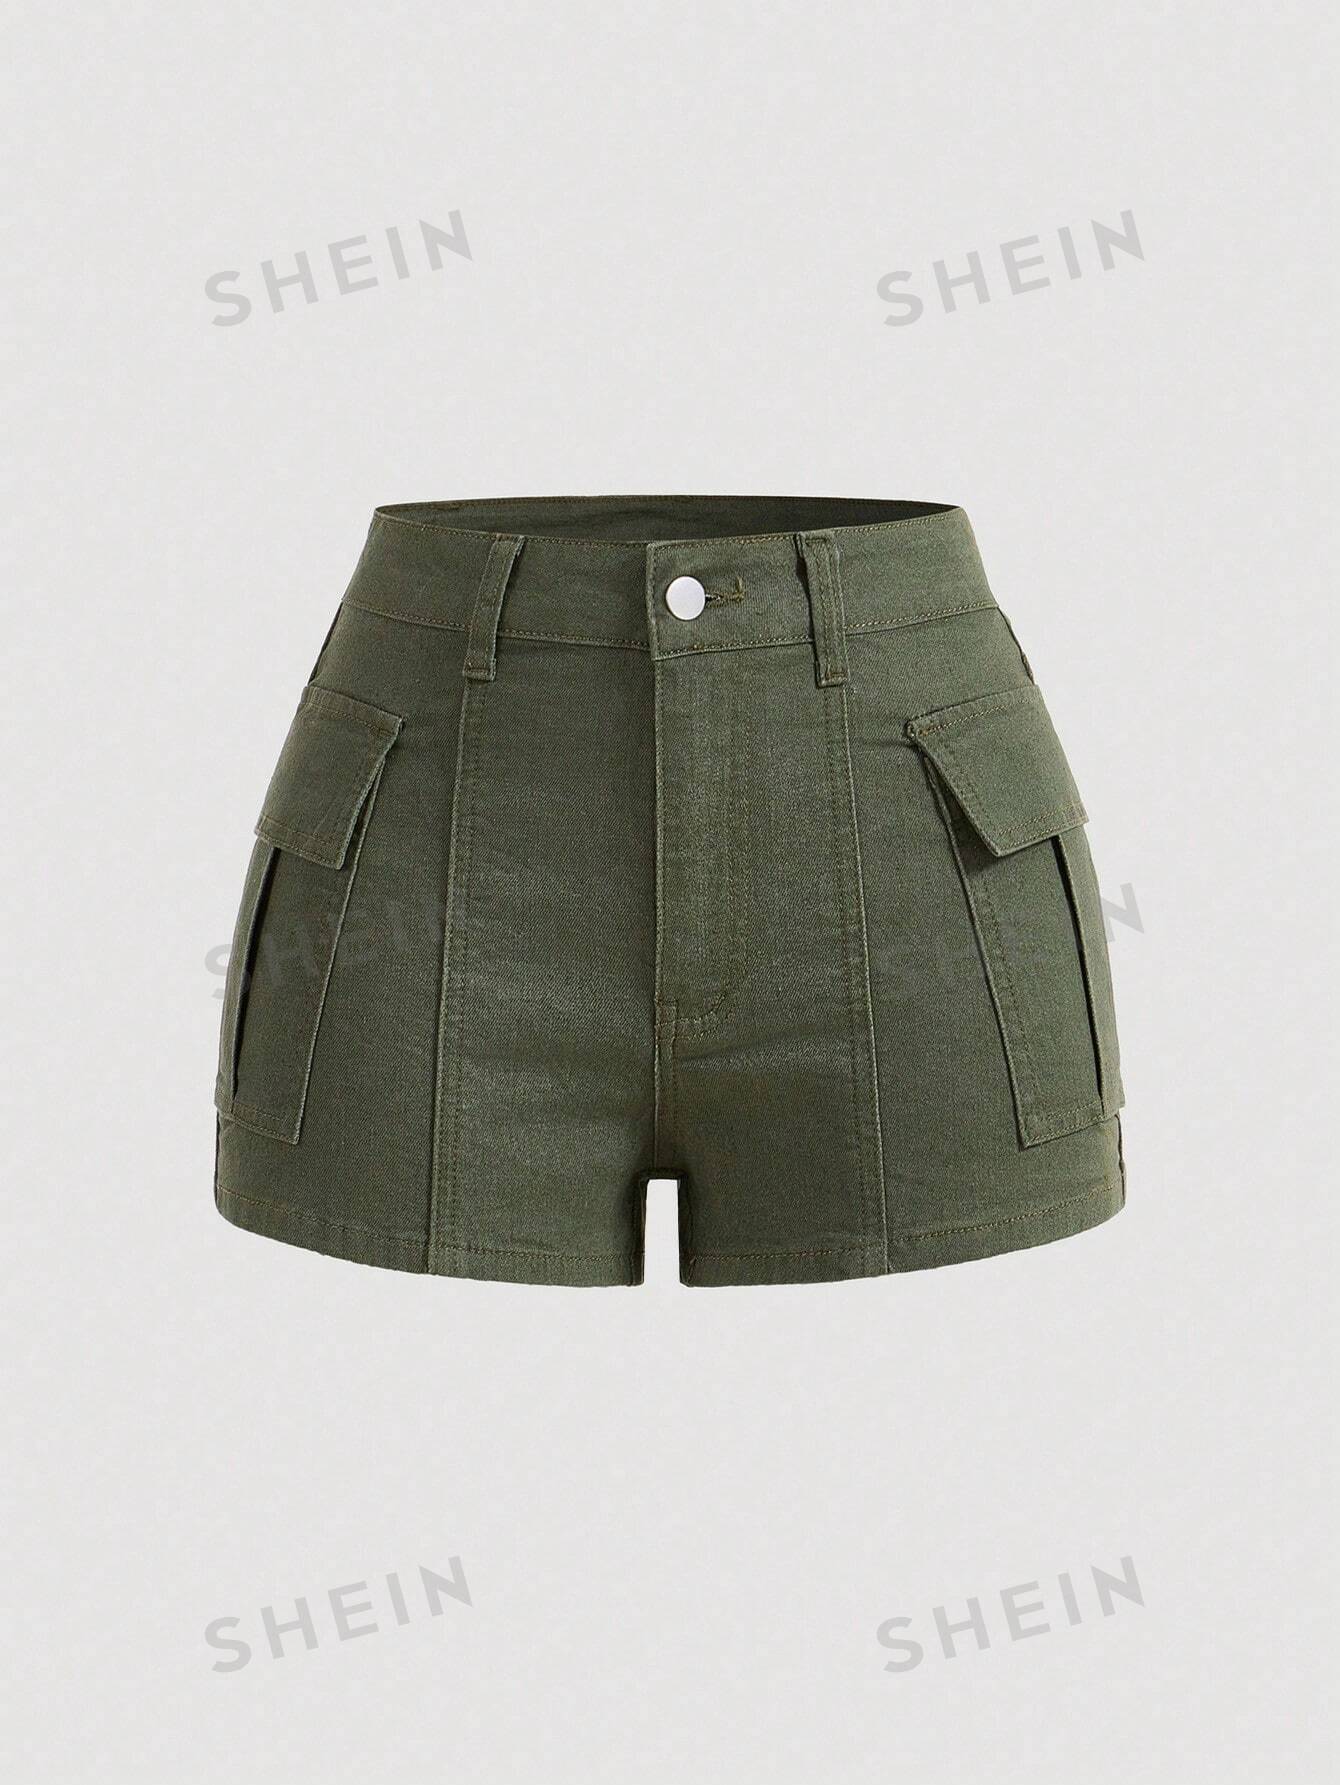 SHEIN MOD Женские популярные шорты, джинсовые джинсовые шорты, оливково-зеленый